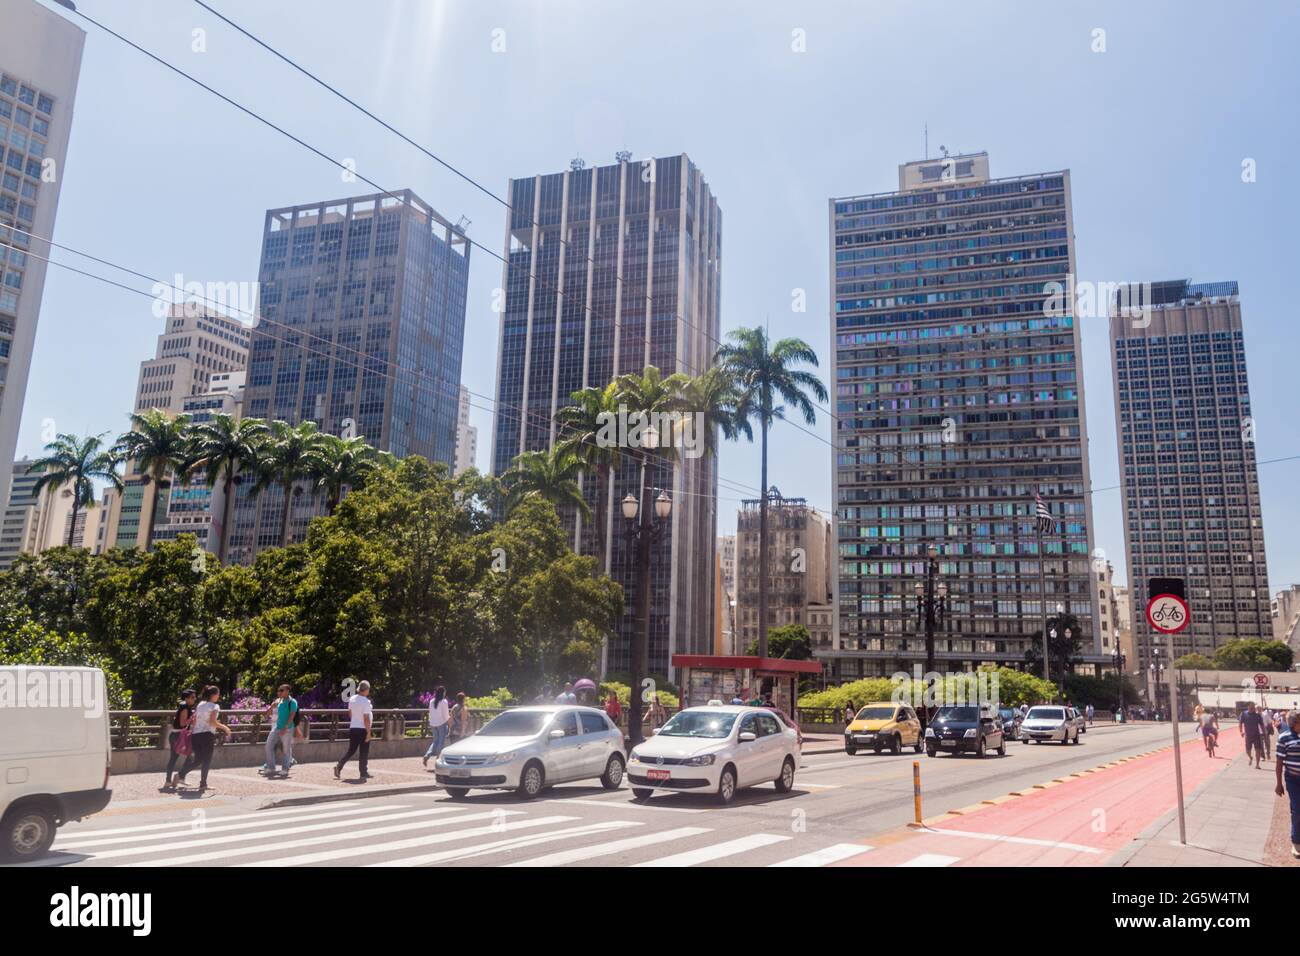 SAN PAOLO, BRASILE - 3 FEBBRAIO 2015: Edifici moderni sulla piazza Ramos de Azevedo a San Paolo, Brasile Foto Stock